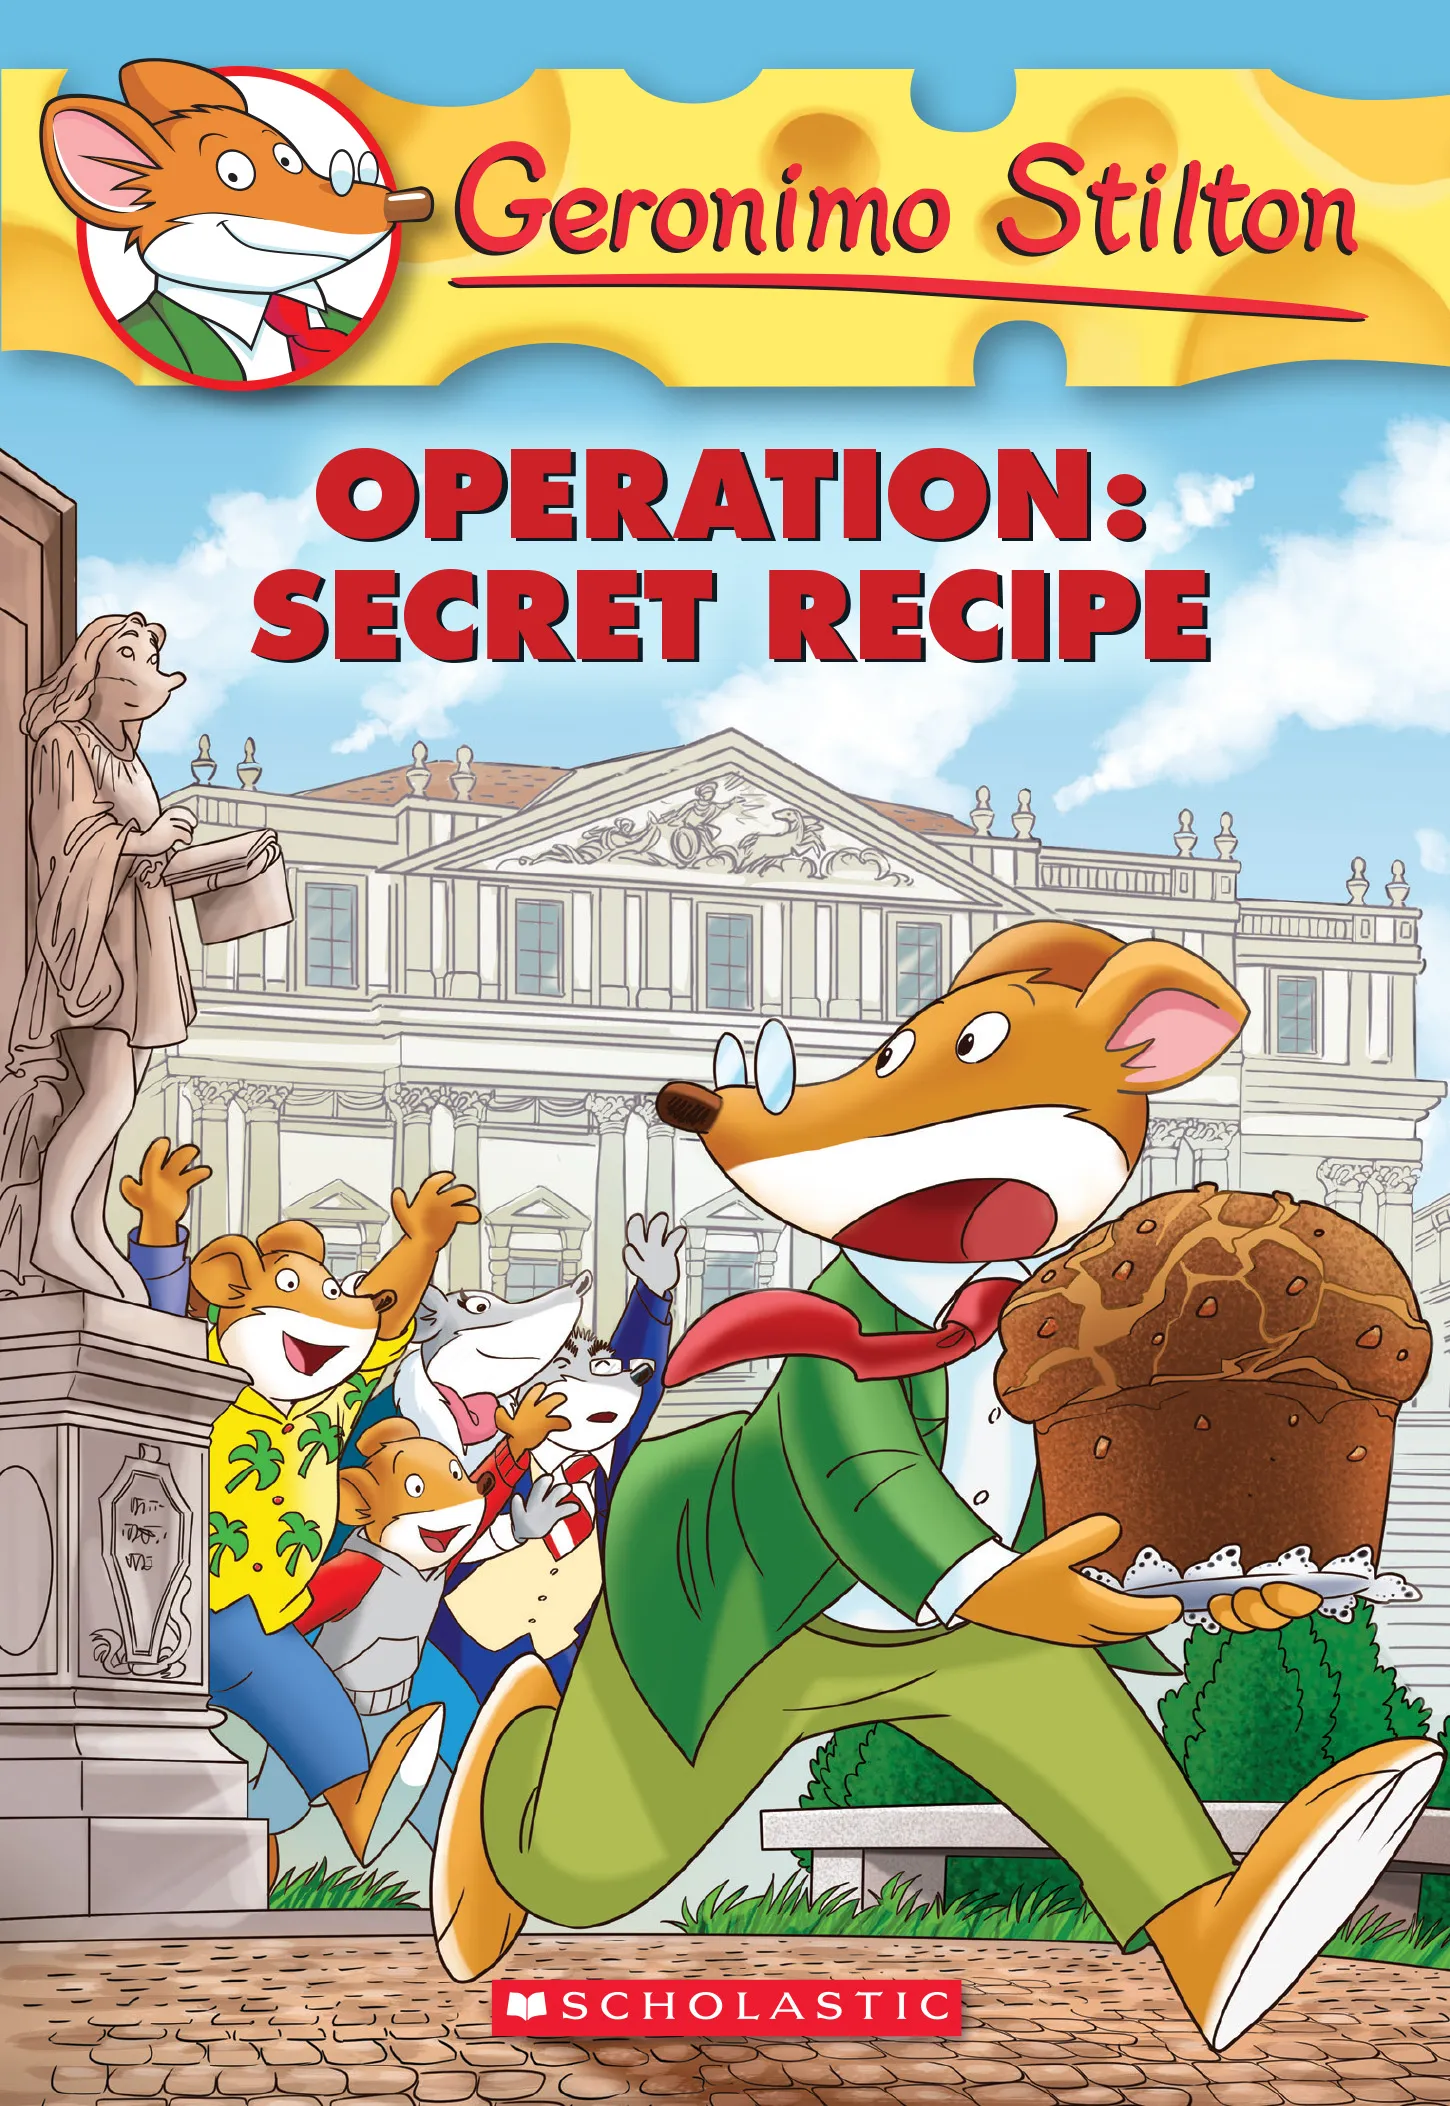 Operation: Secret Recipe (Geronimo Stilton #66)